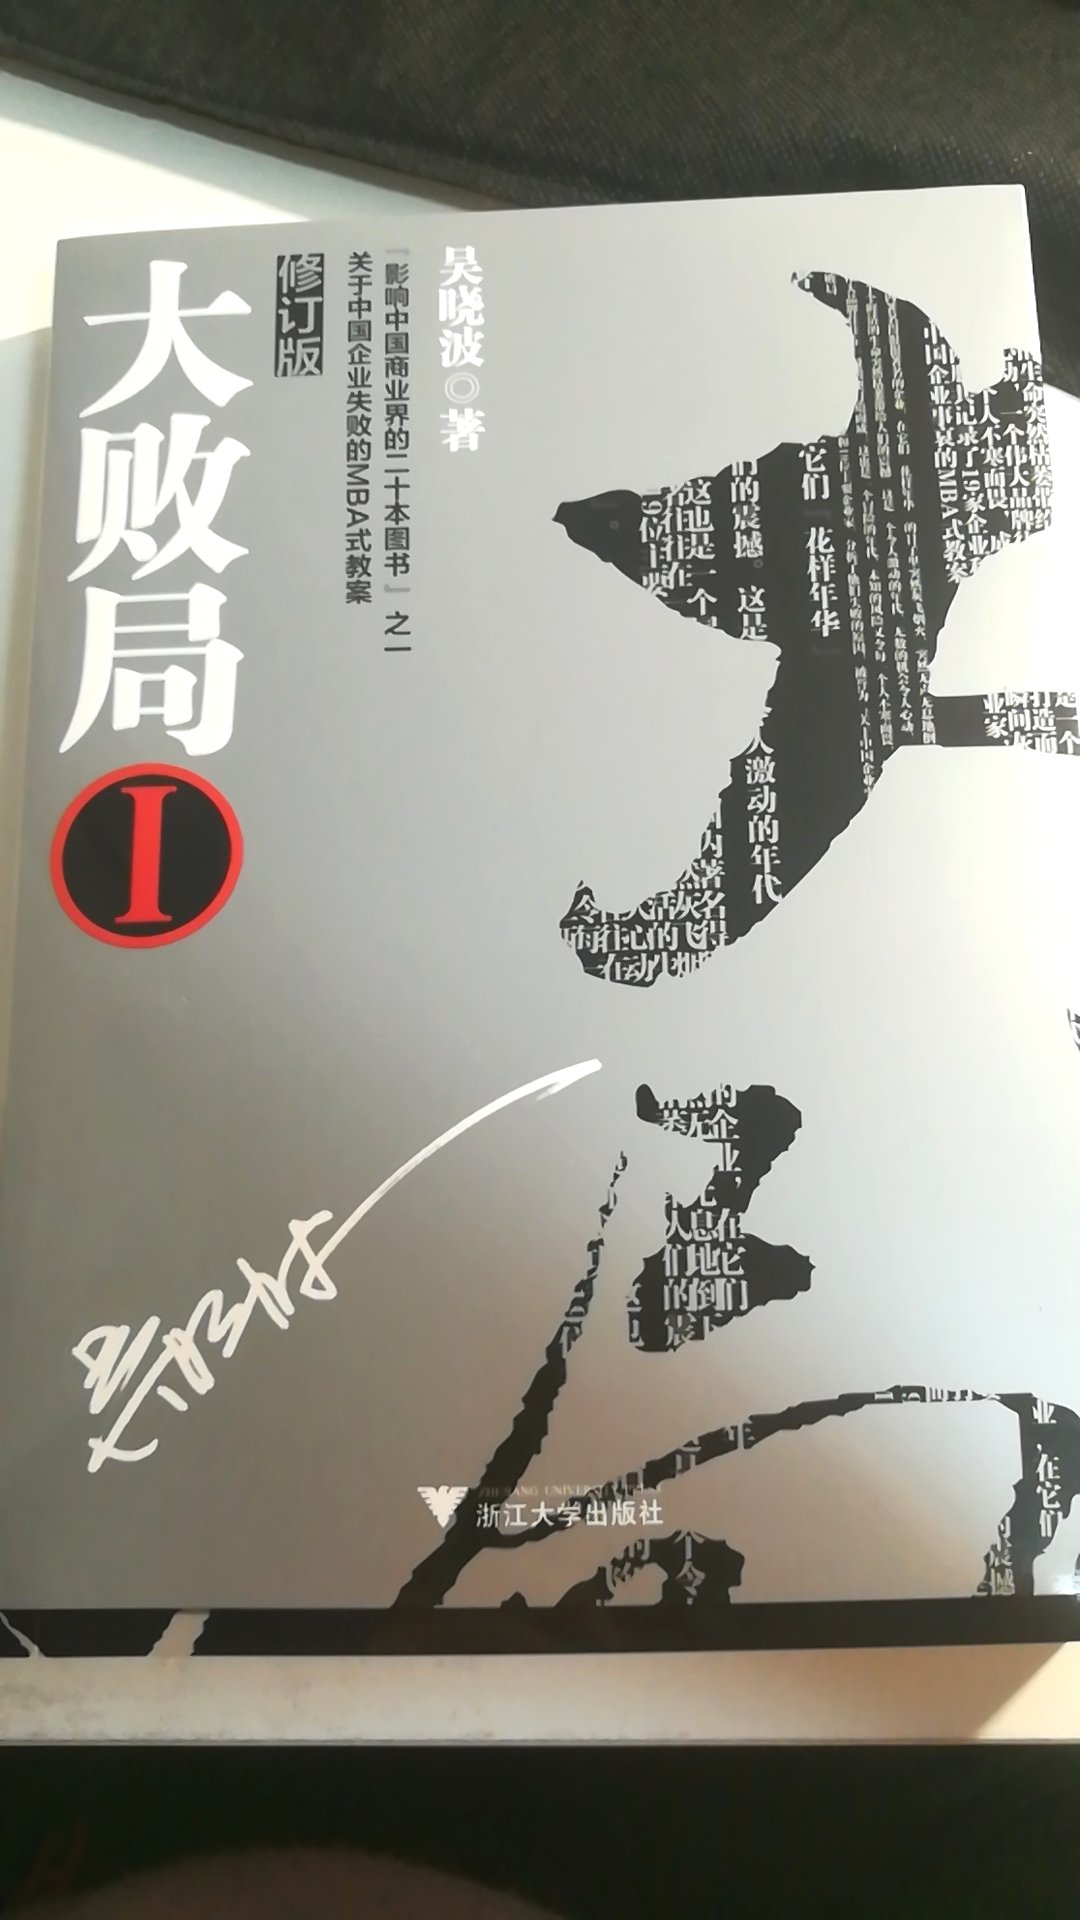 买了好几本吴晓波的书，看看书学学具体案例。。。我不是知识的创作者，只是知识的搬运工＋外加工。我看书，我自豪